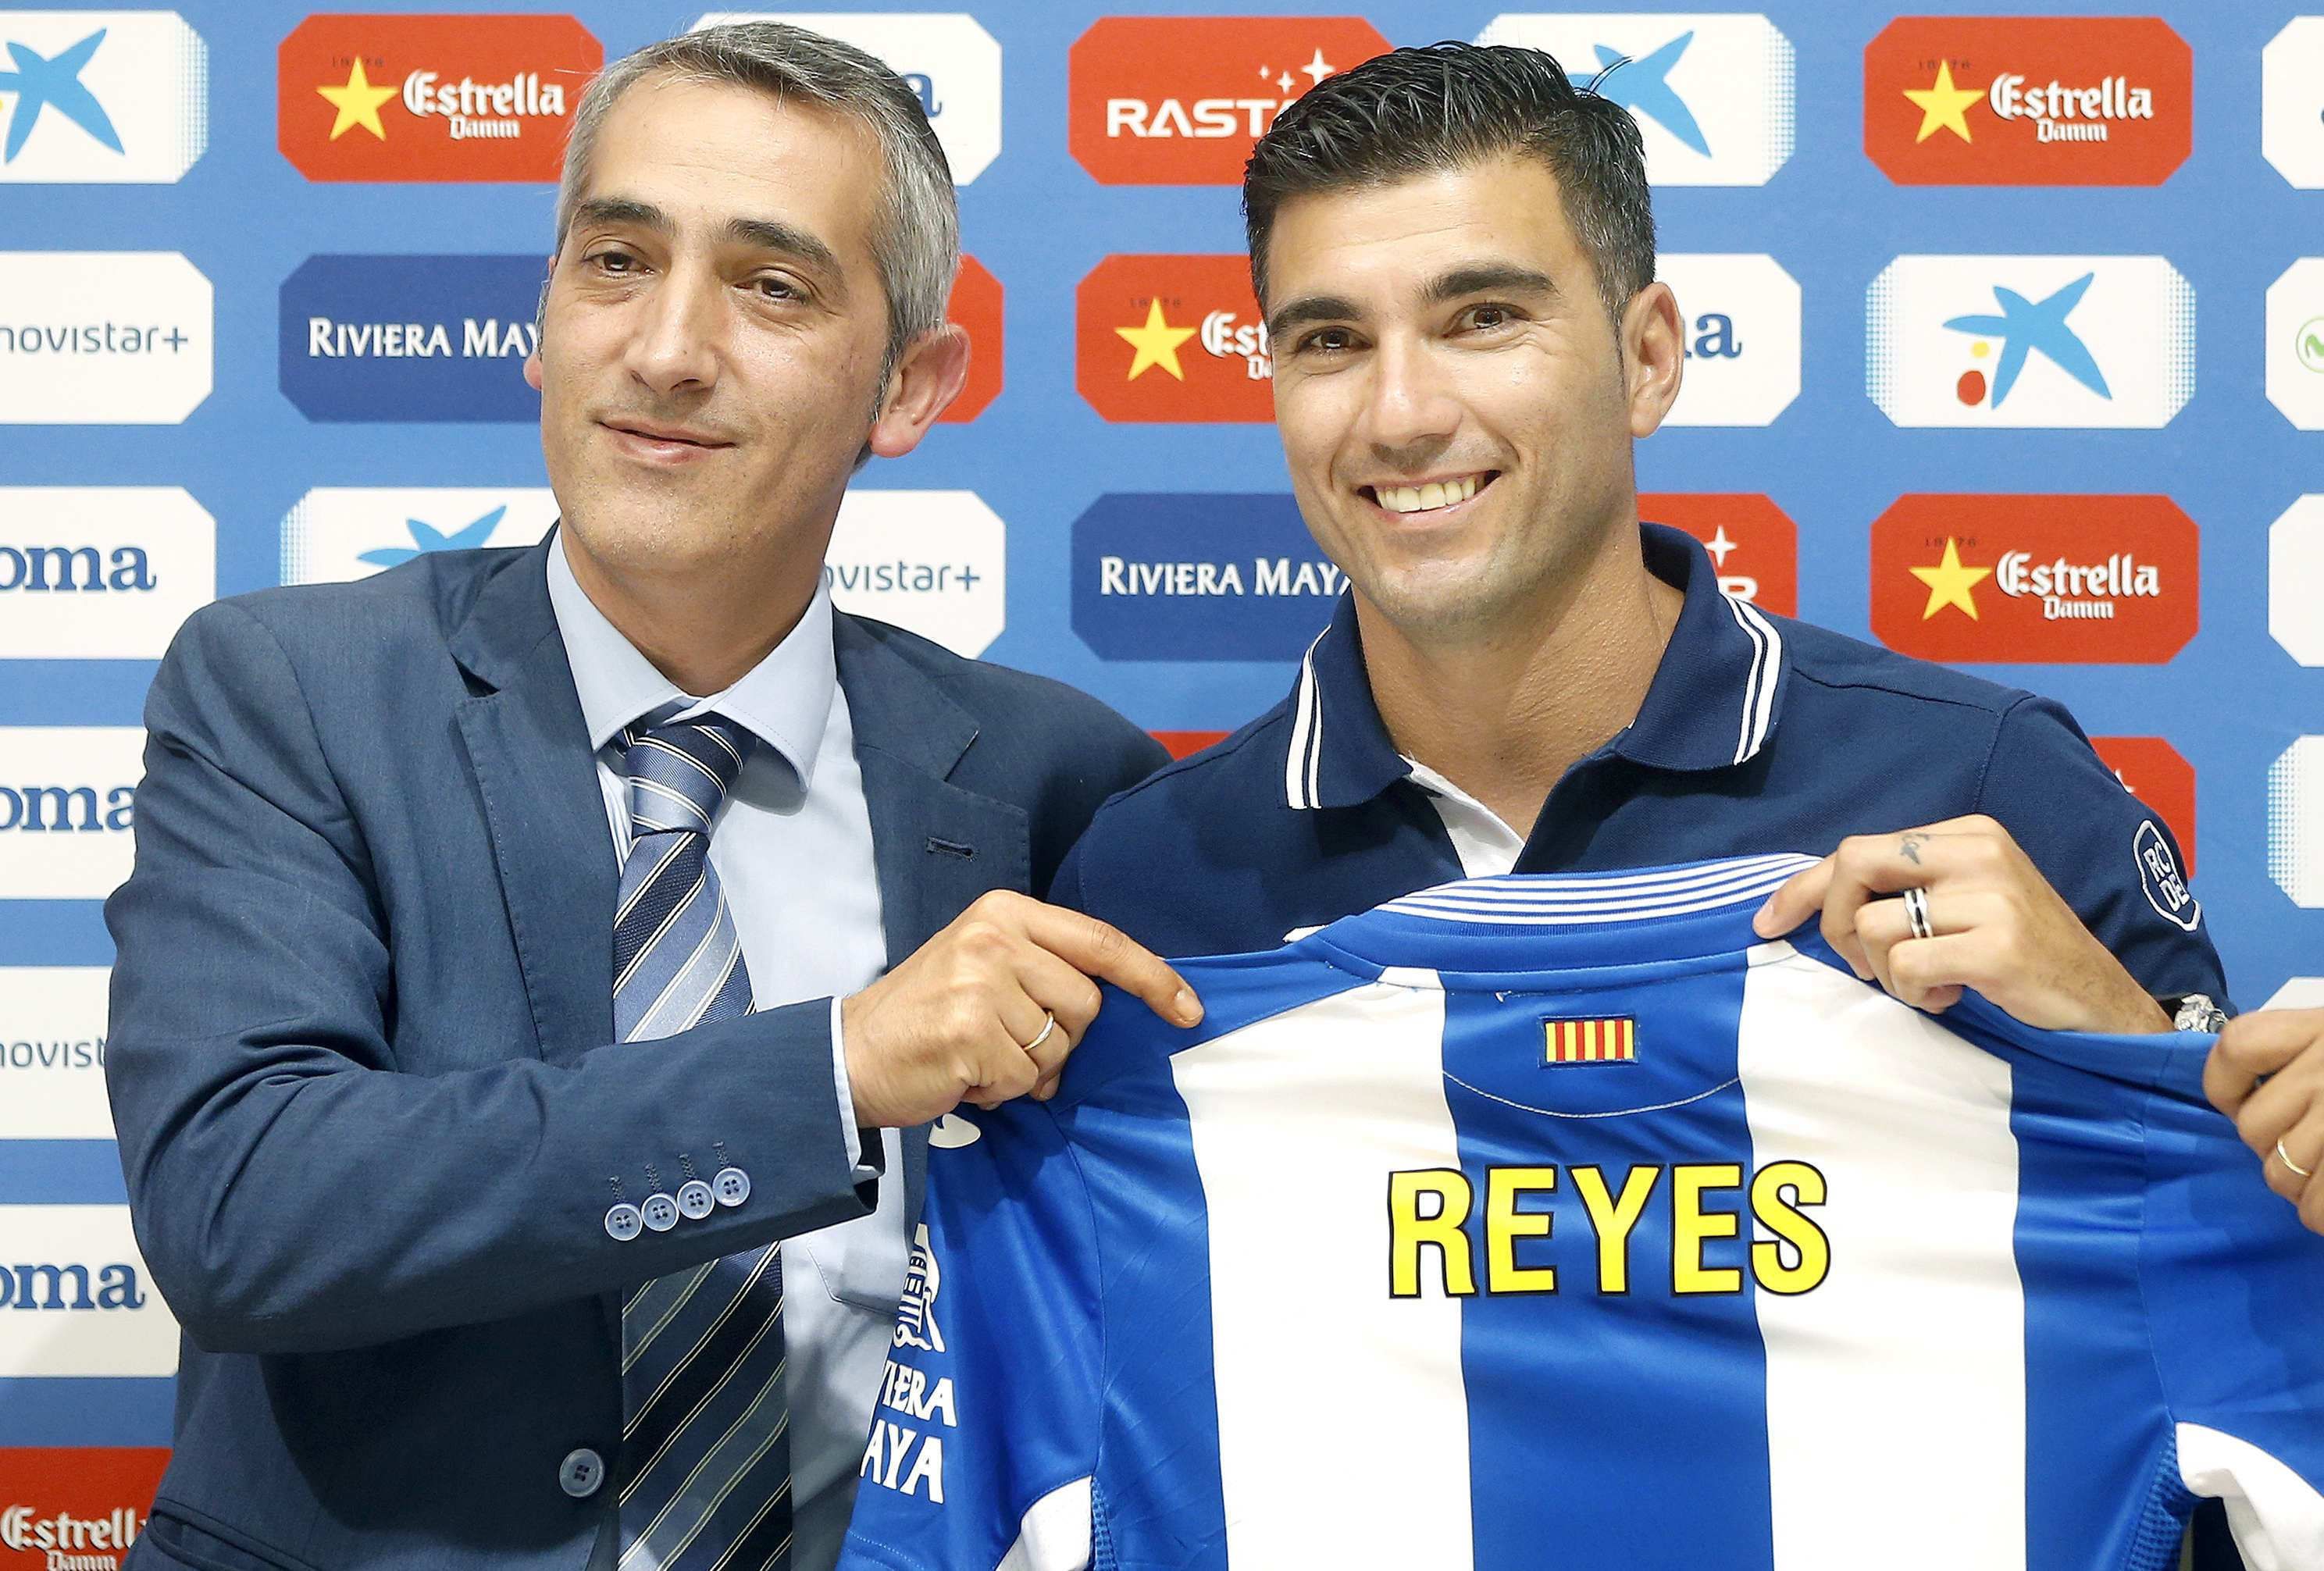 Reyes, segon fitxatge de l'Espanyol